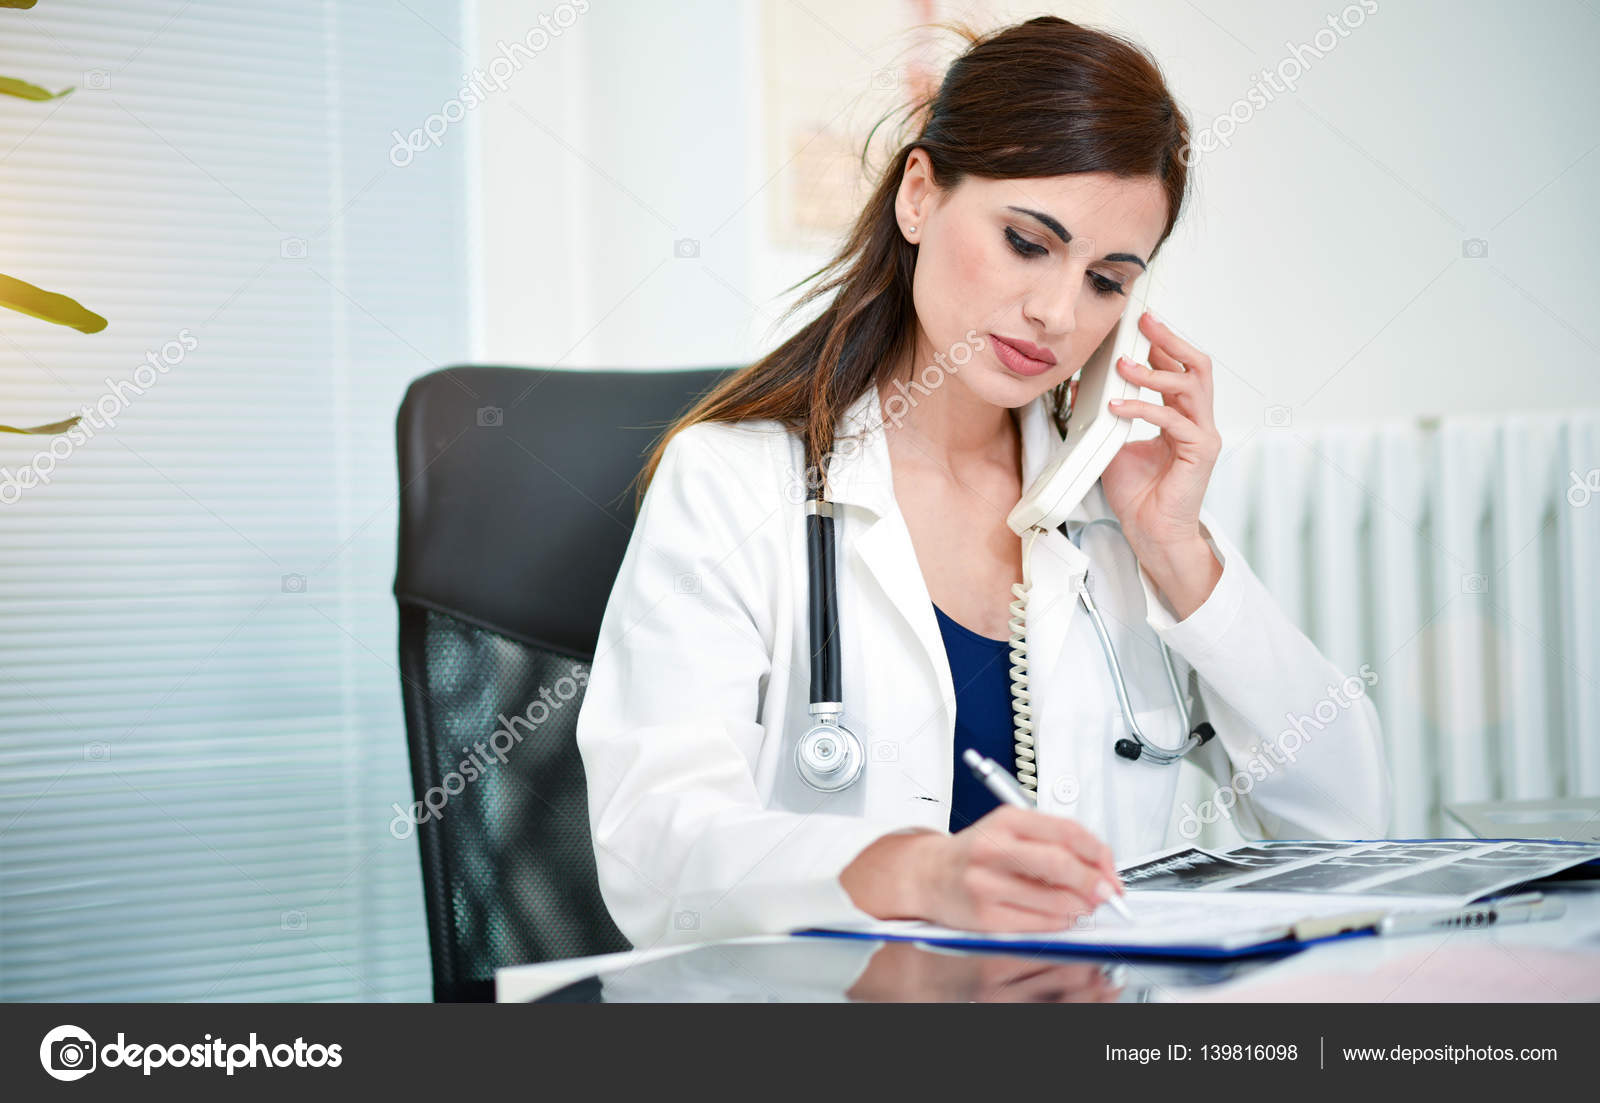 Стоит ли обратиться к врачу. Врач с телефоном. Доктор с телефоном. Врач разговаривает по телефону. Консультация врача.